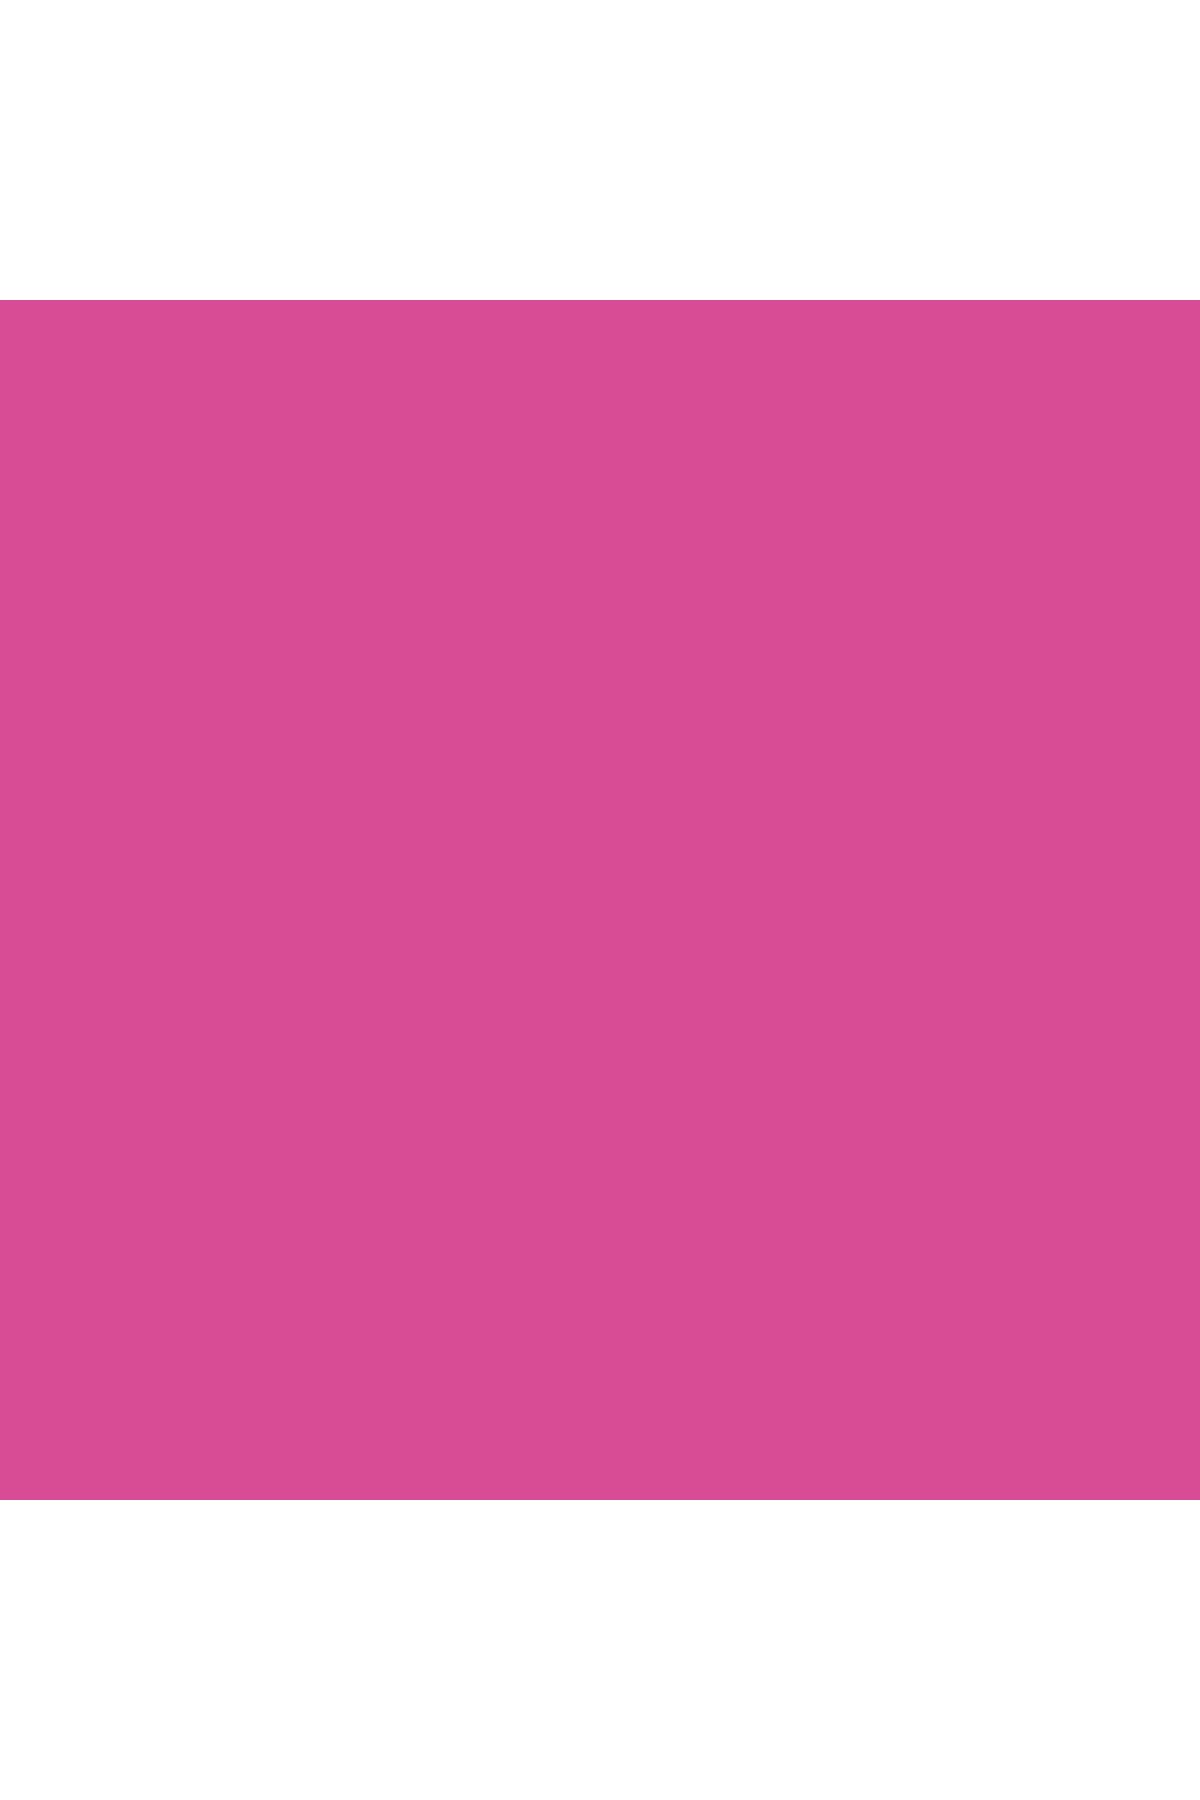 Marabu Textile Design 150ml Spray Kumaş Boyası No:033 Pink